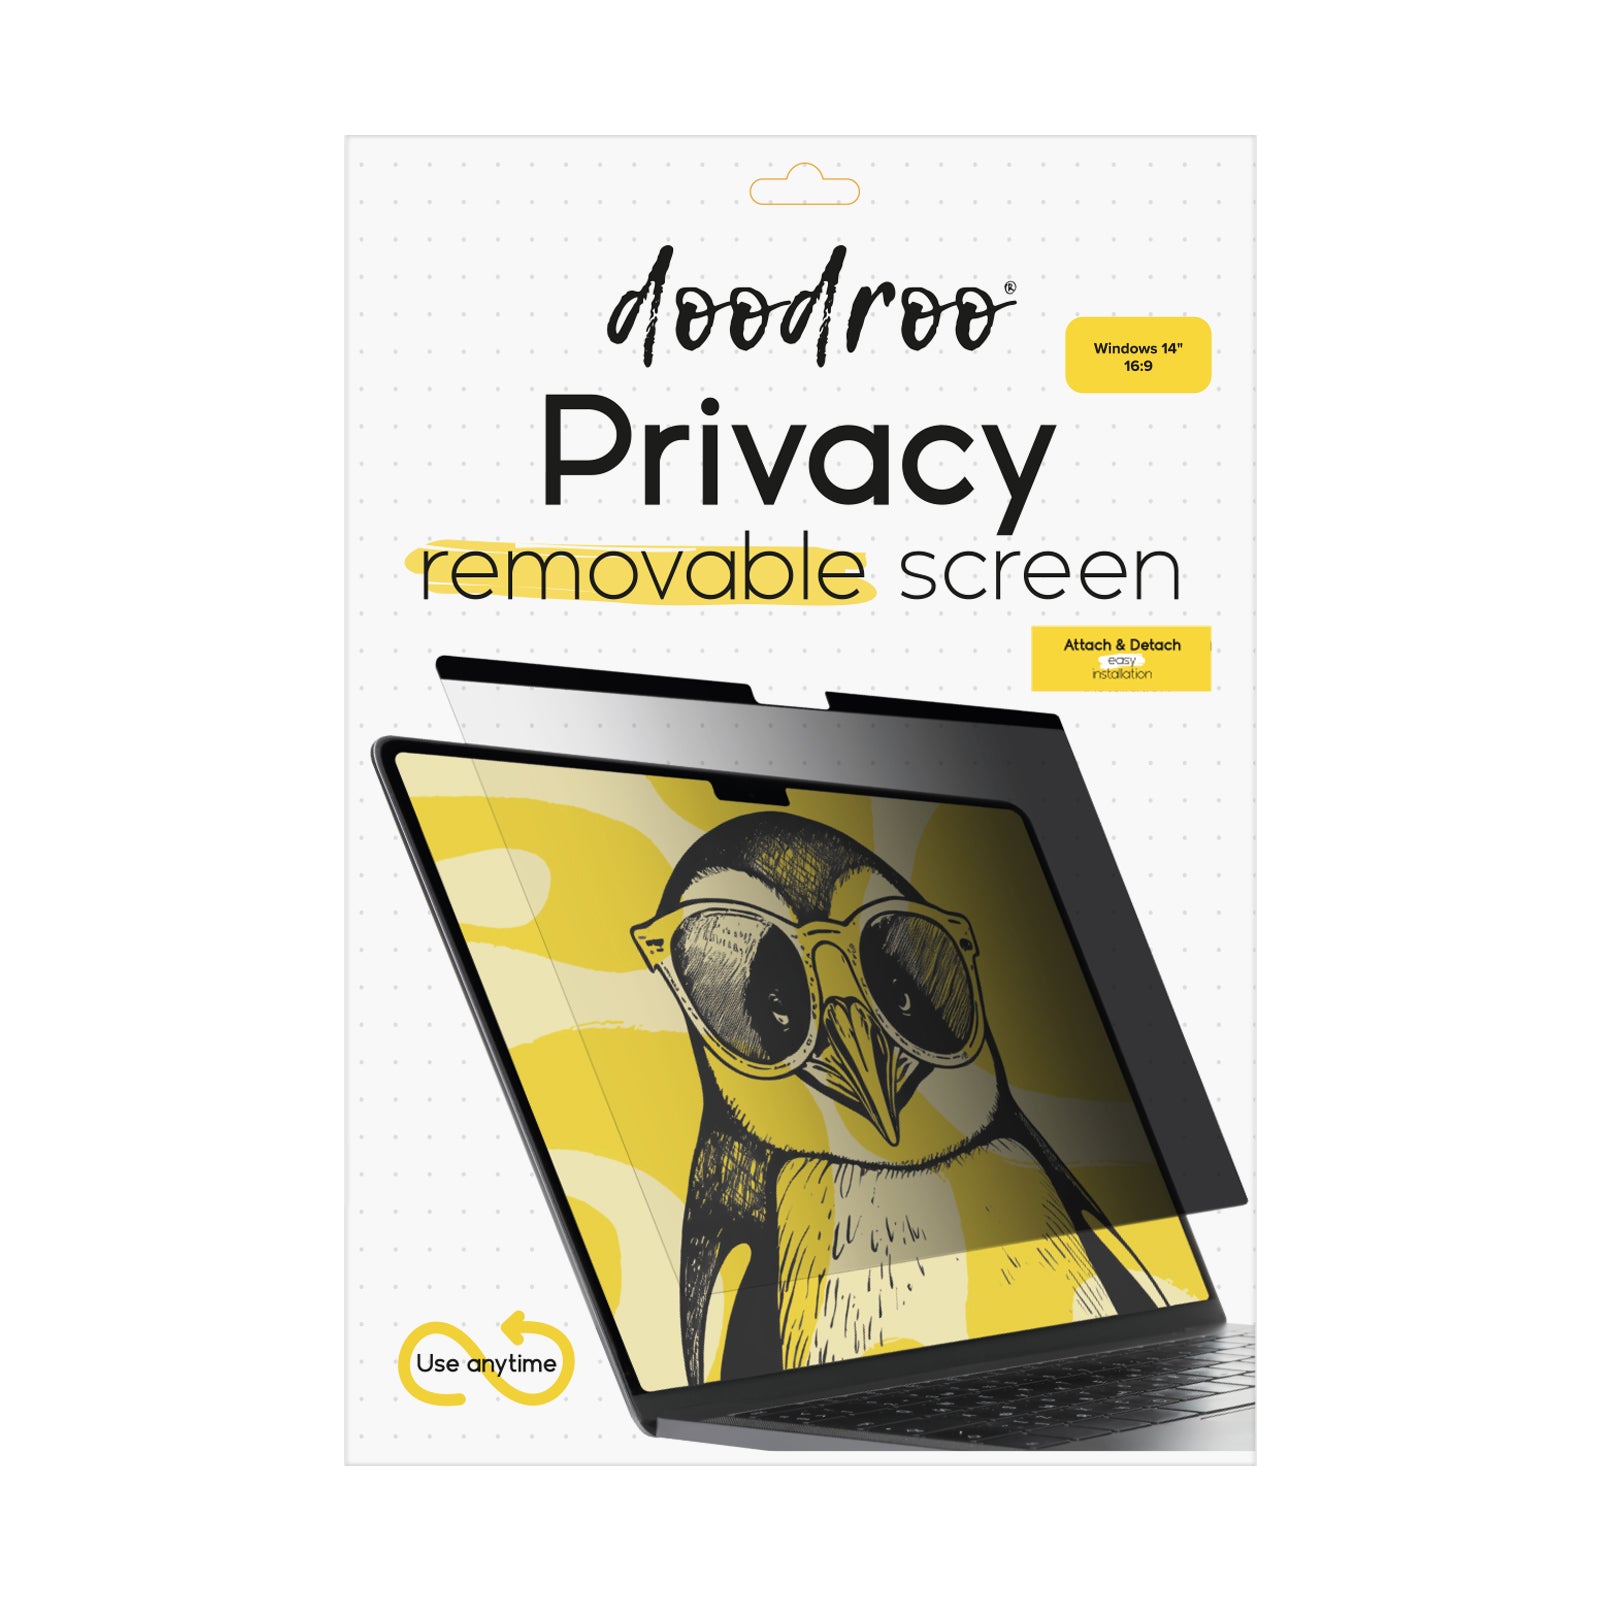 Screen protector rimovibile effetto privacy per Windows da 14" 16:9